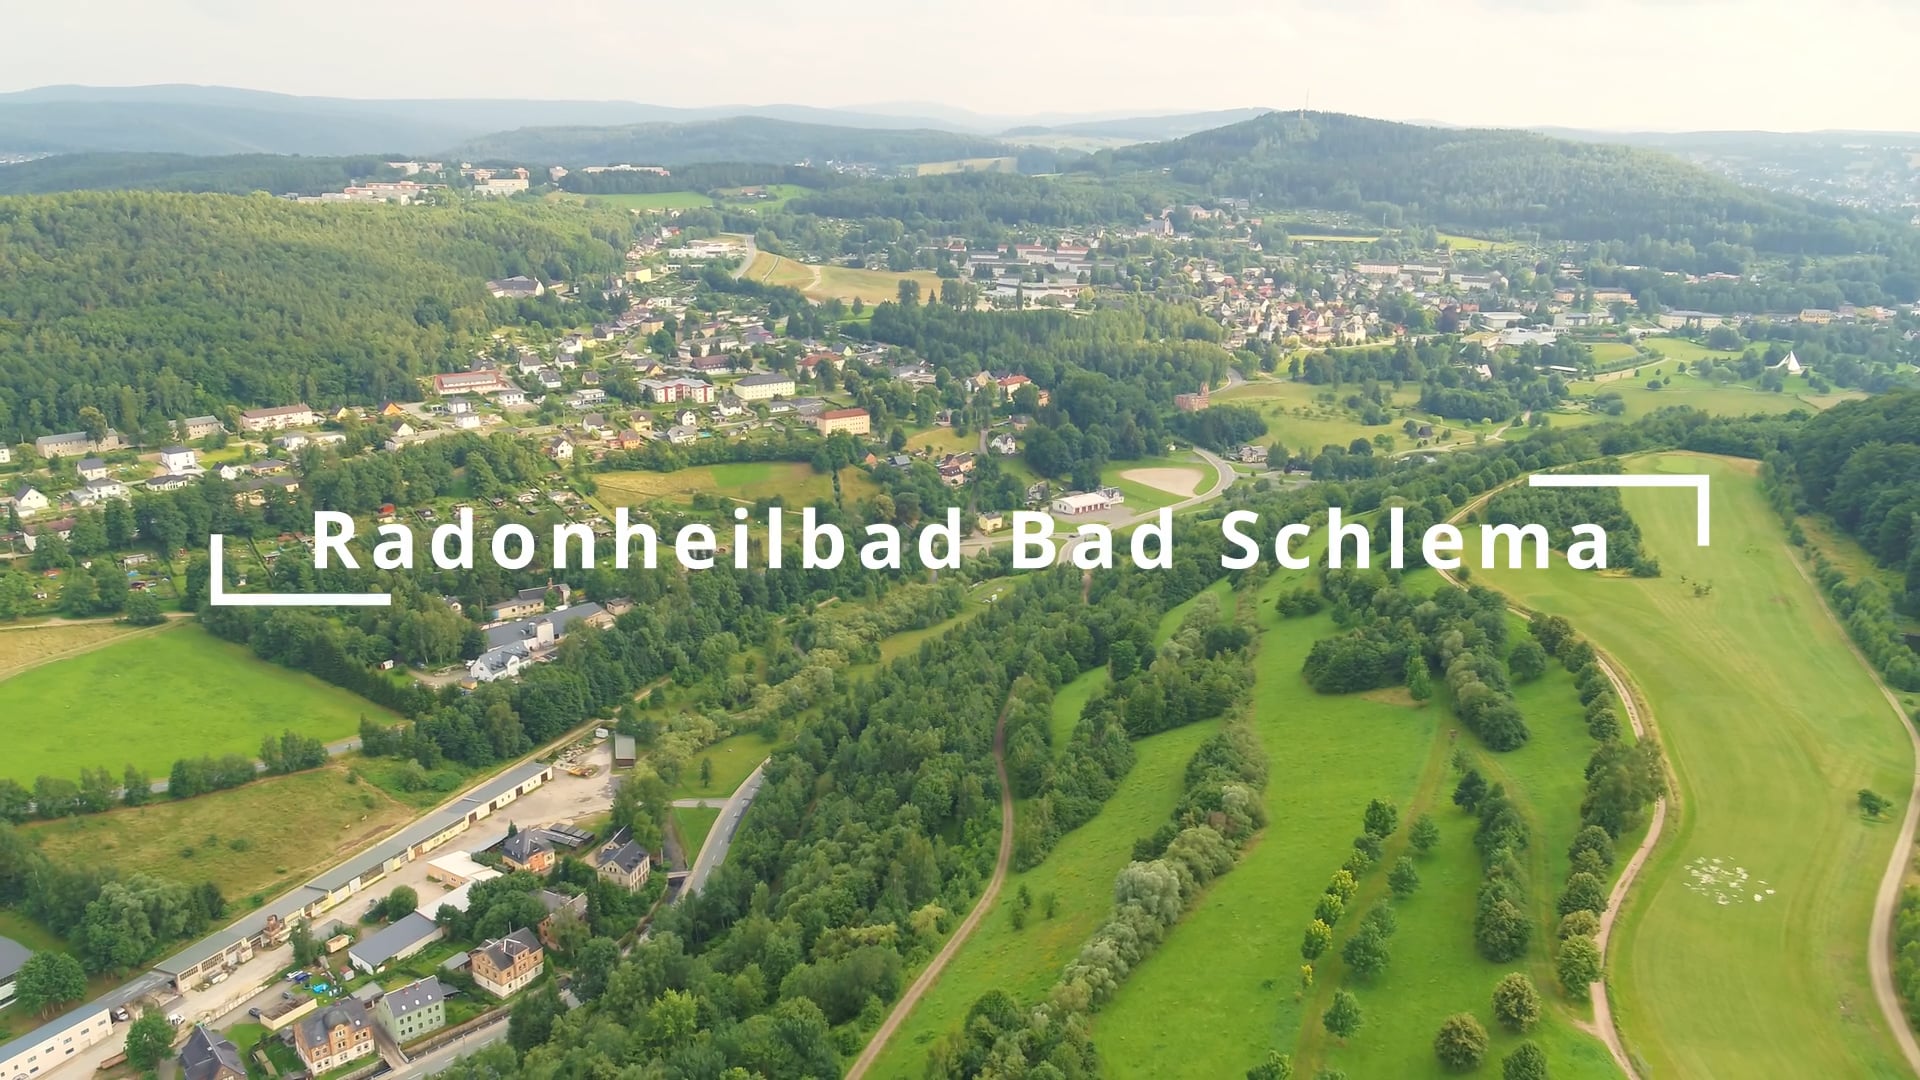 Radhonheilbad Bad Schlema im Erzgebirge